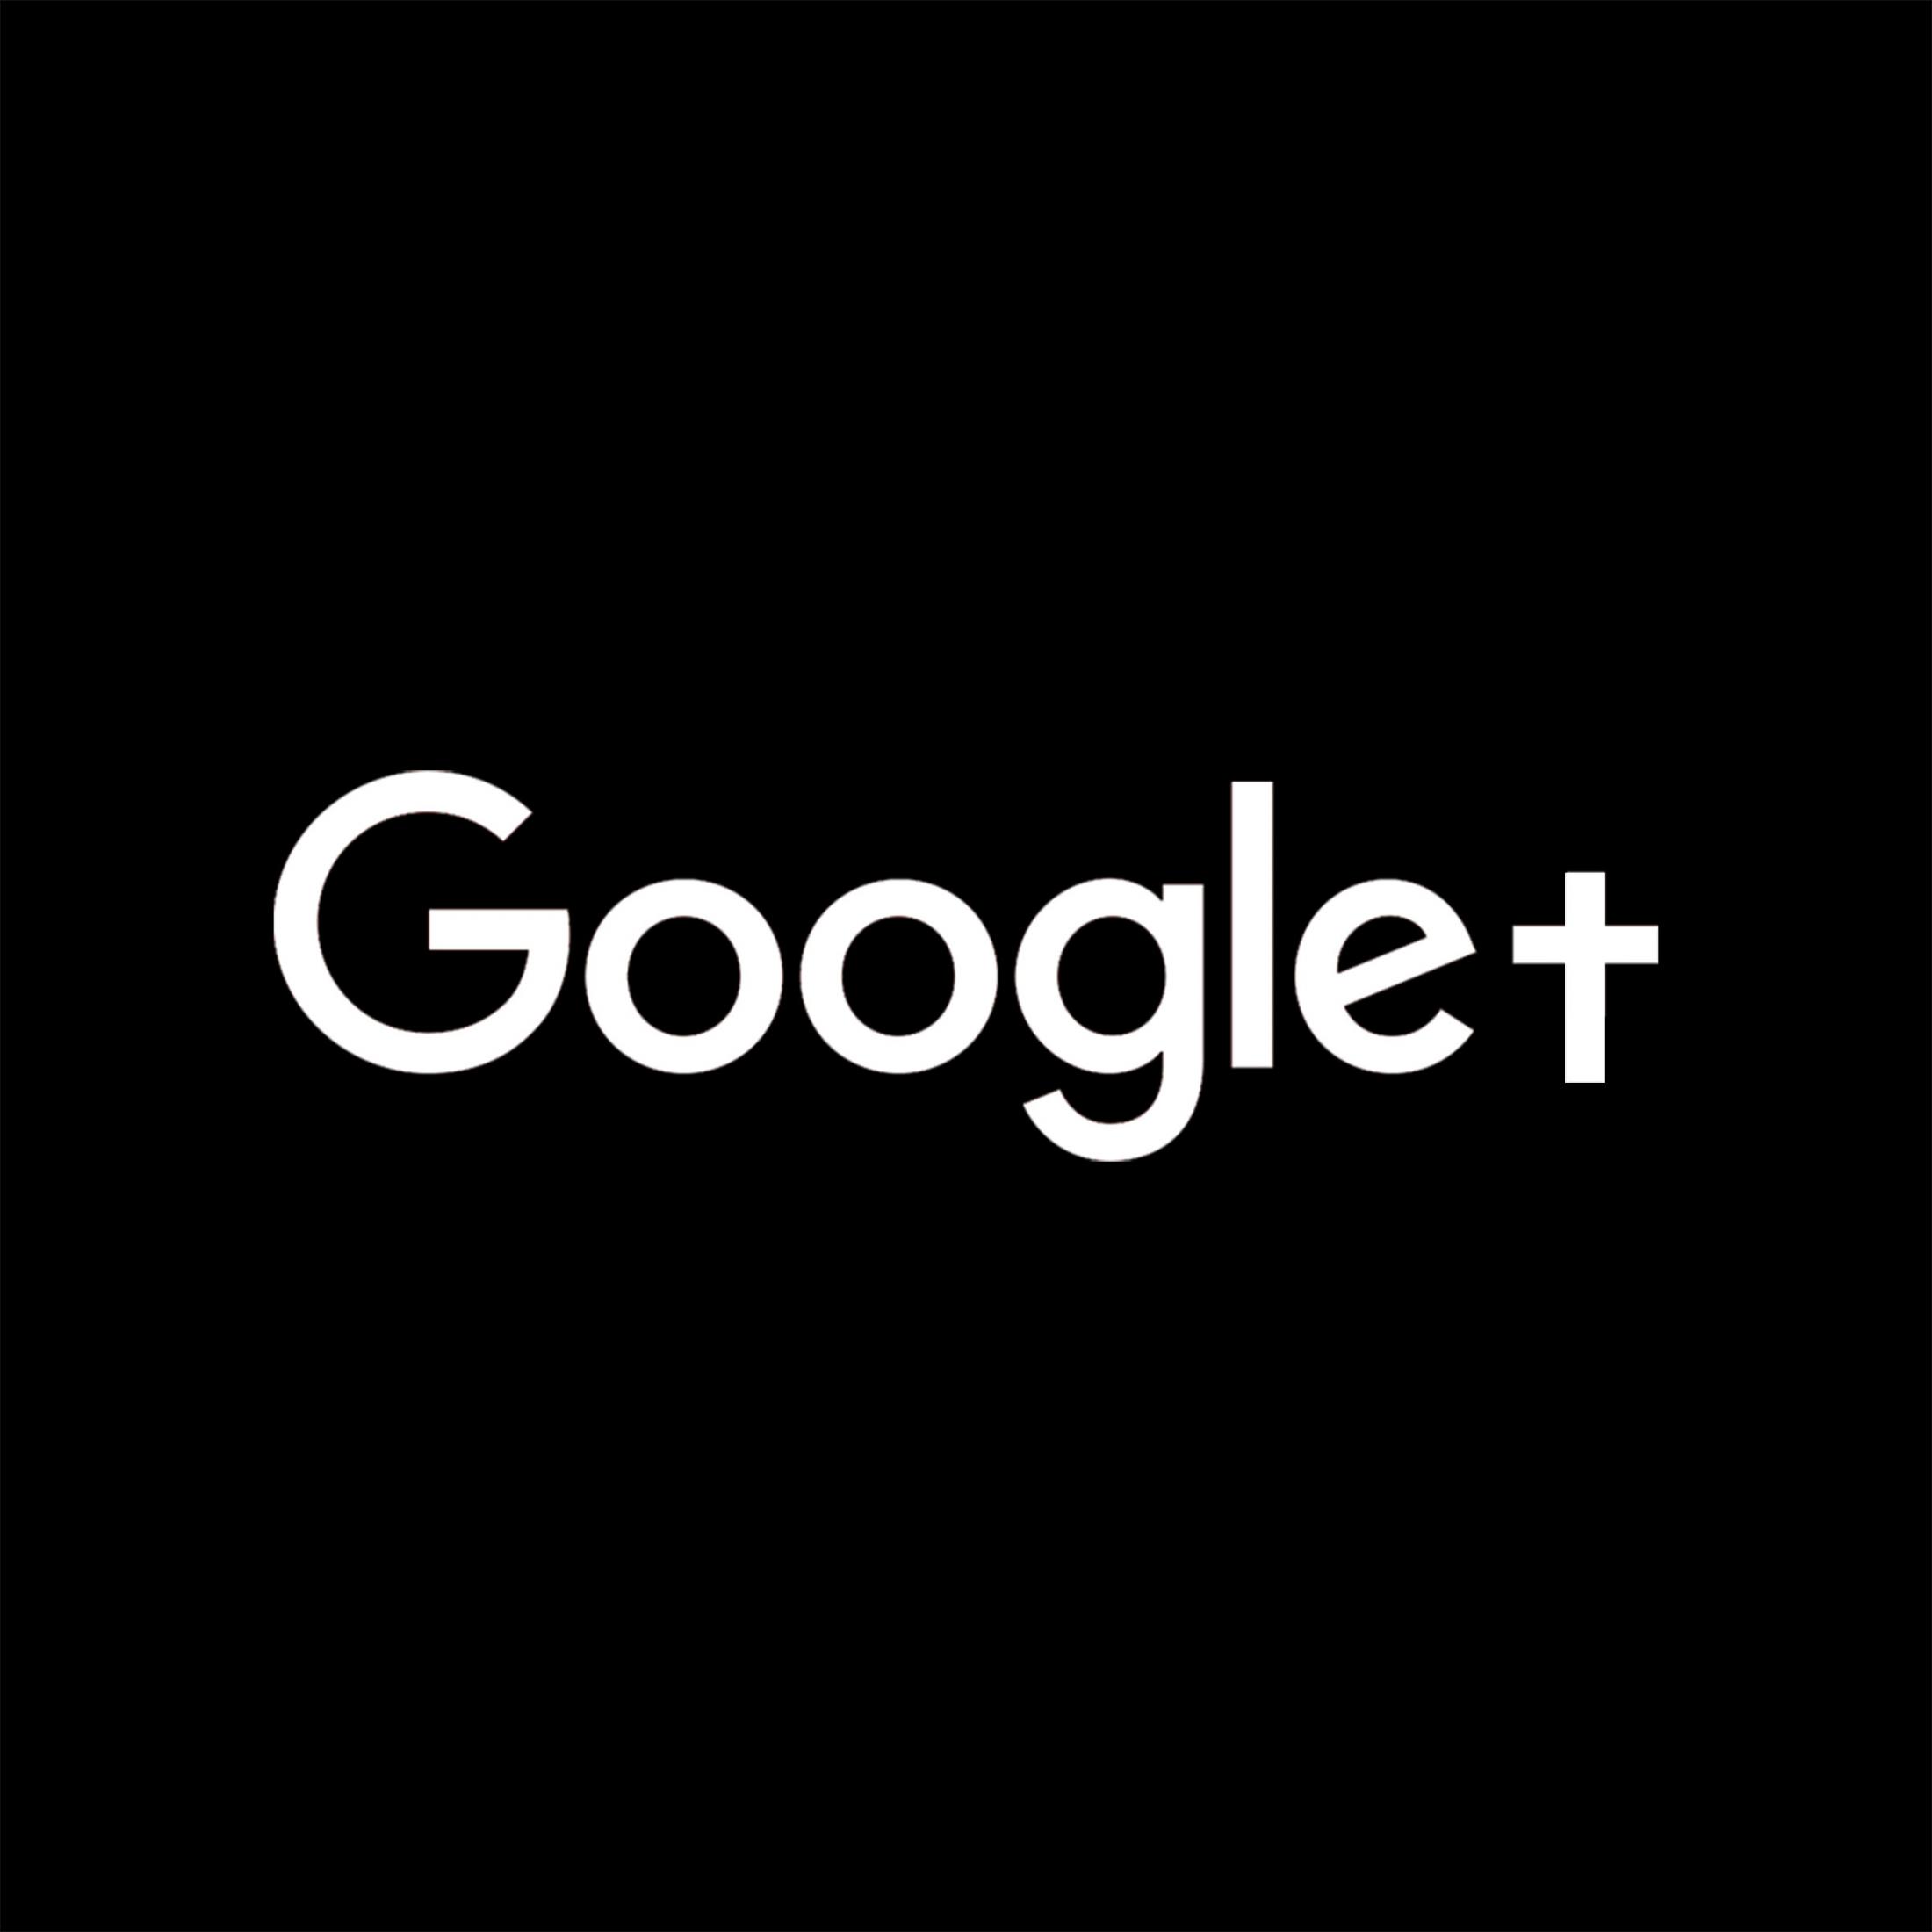 Una agencia digital modificó el logotipo de Google + para homenajear a la red social que cerró definitivamente a principios de abril.